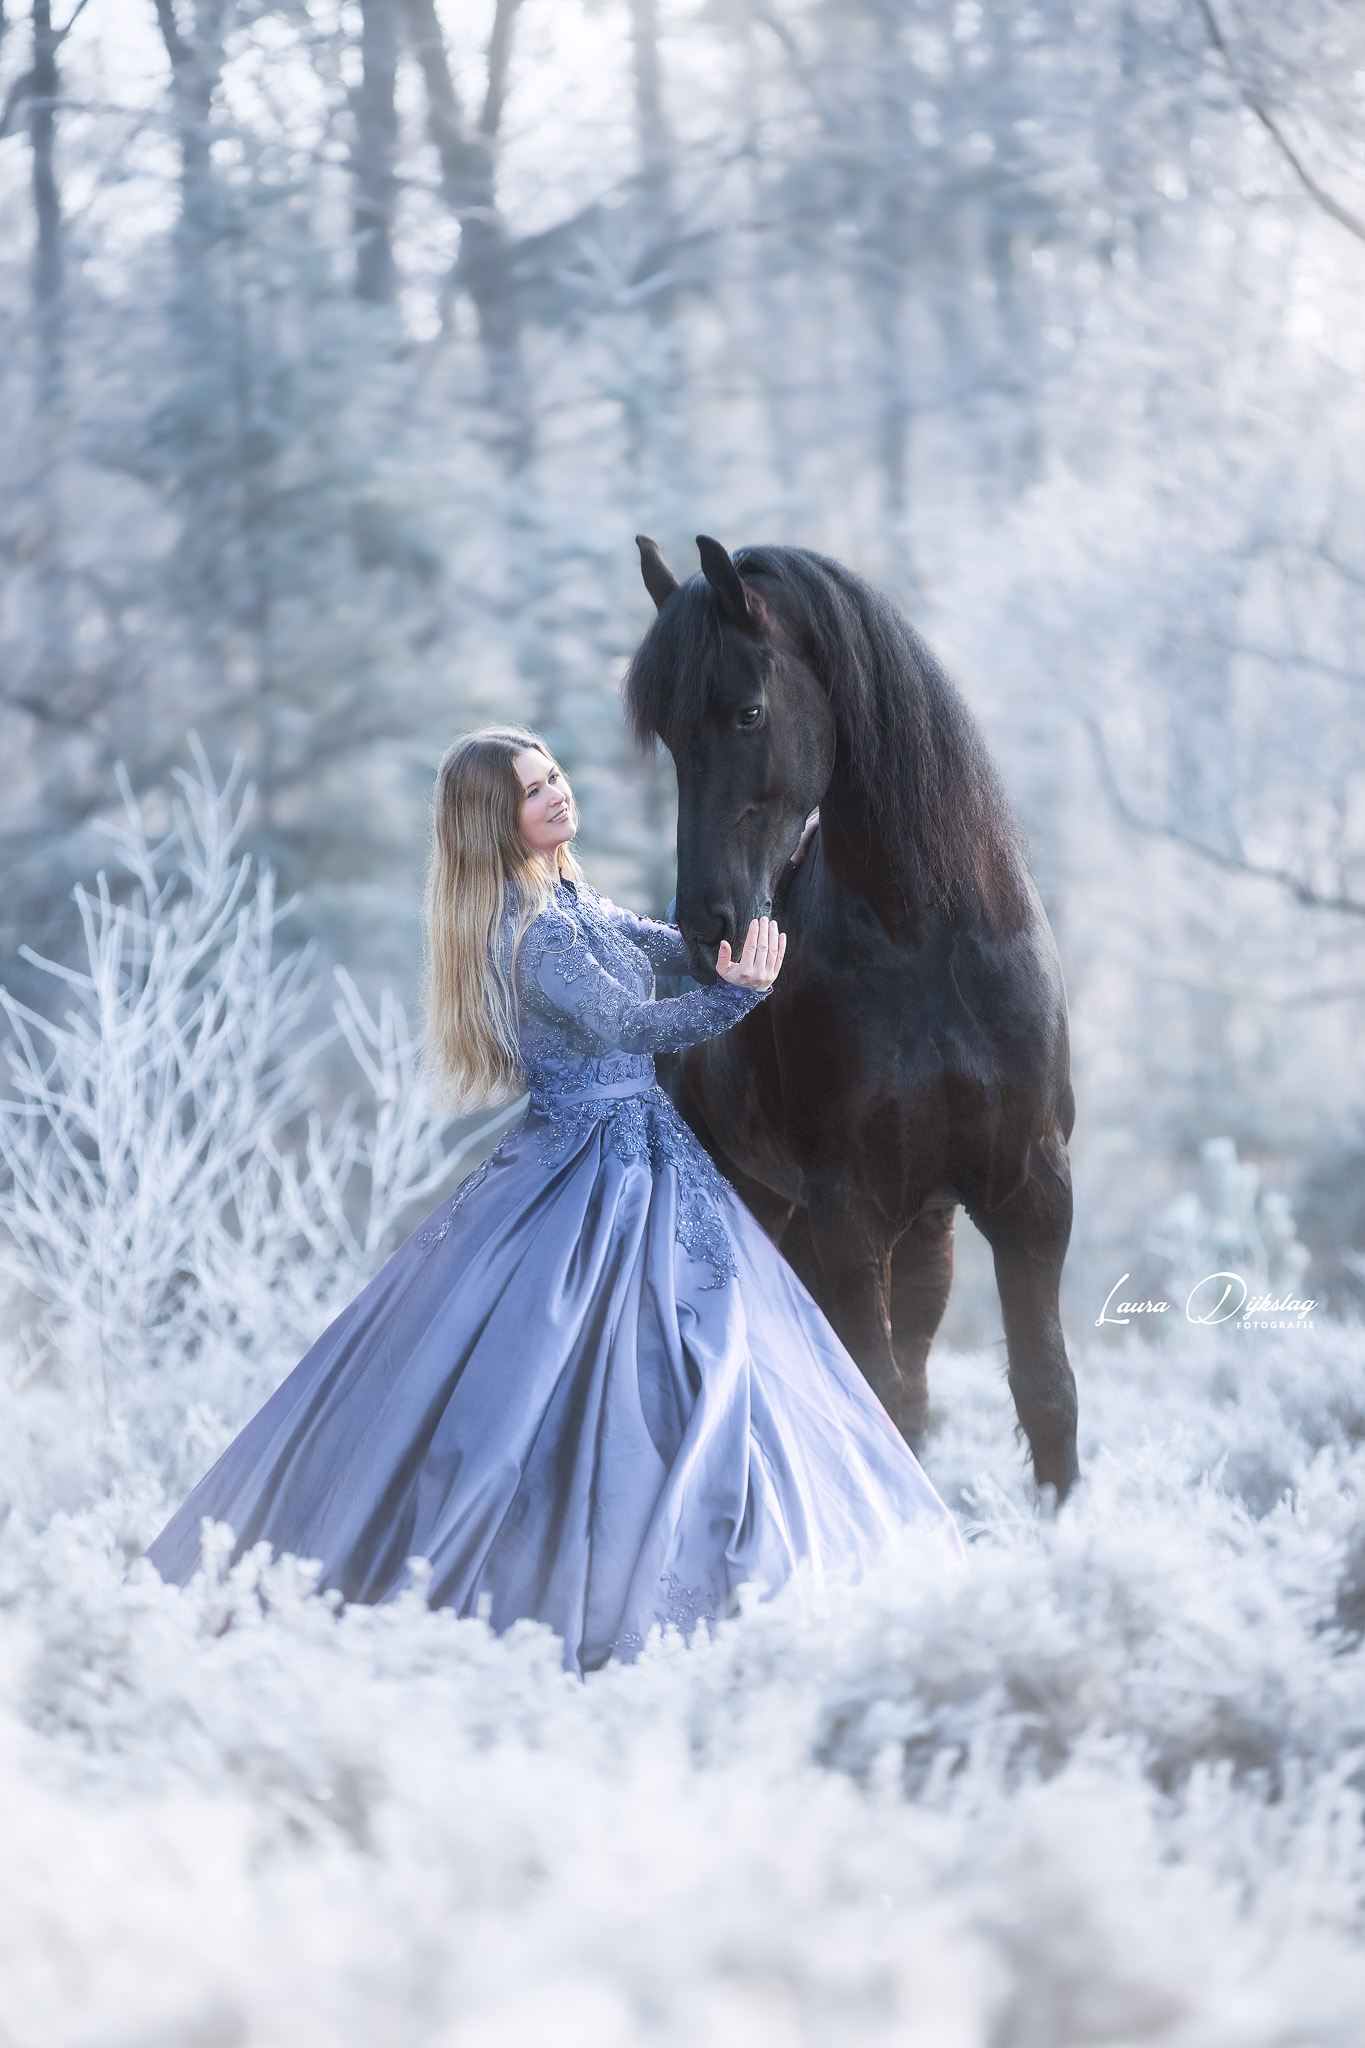 friese paarden winter paardenfotograaf romantische paardenfotografie laura dijkslag fotografie heerde epe apeldoorn